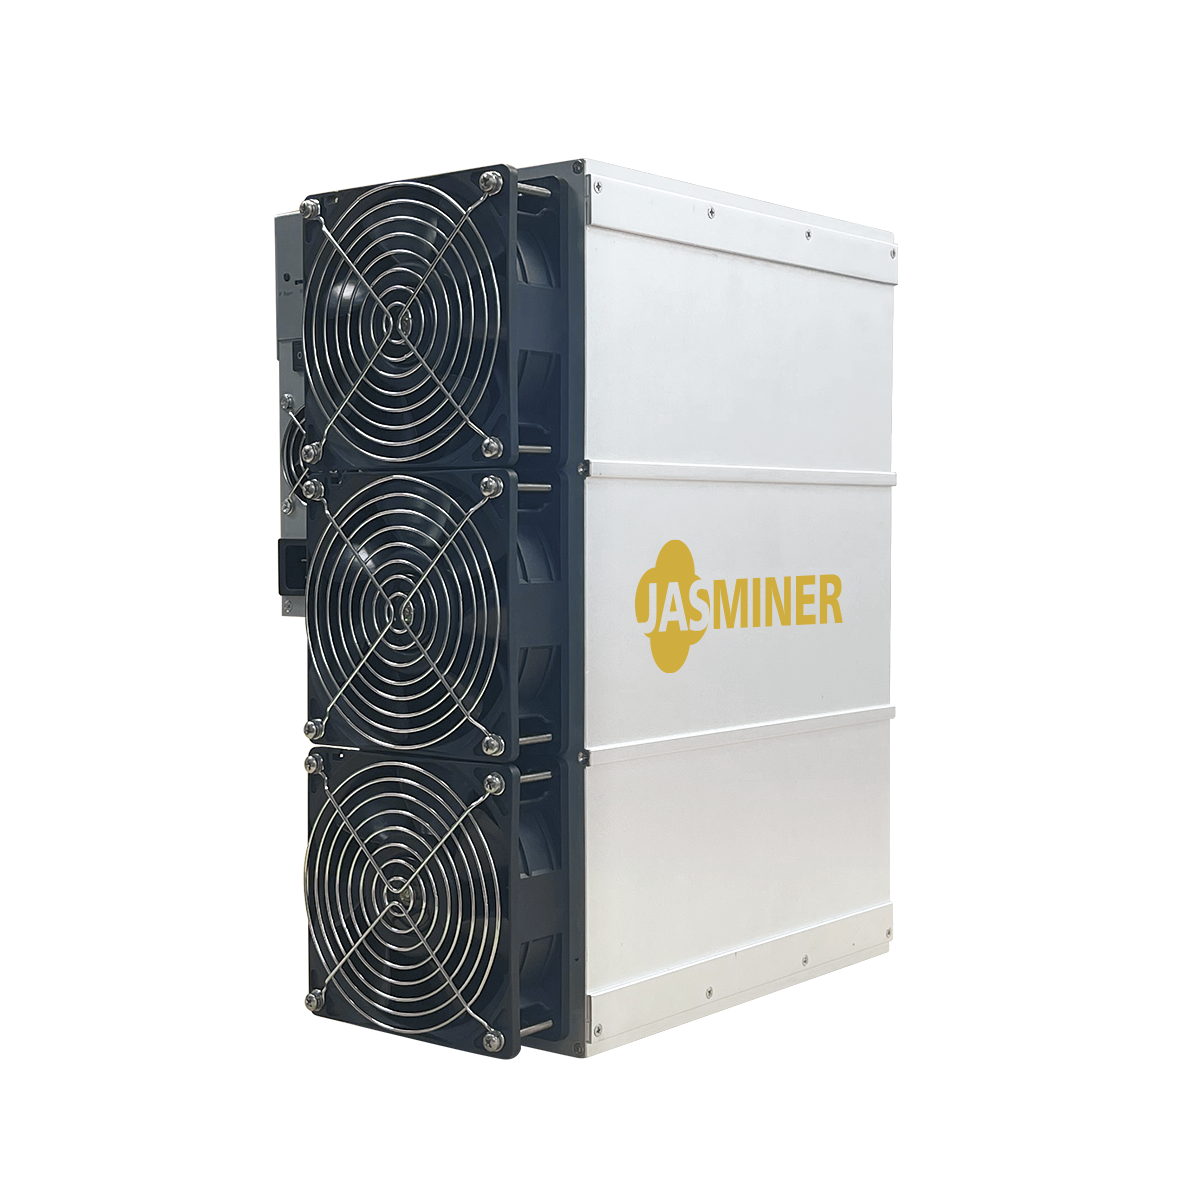 【예약판매】JASMINER X16-P 고처리량 파워서버 (5800MH)